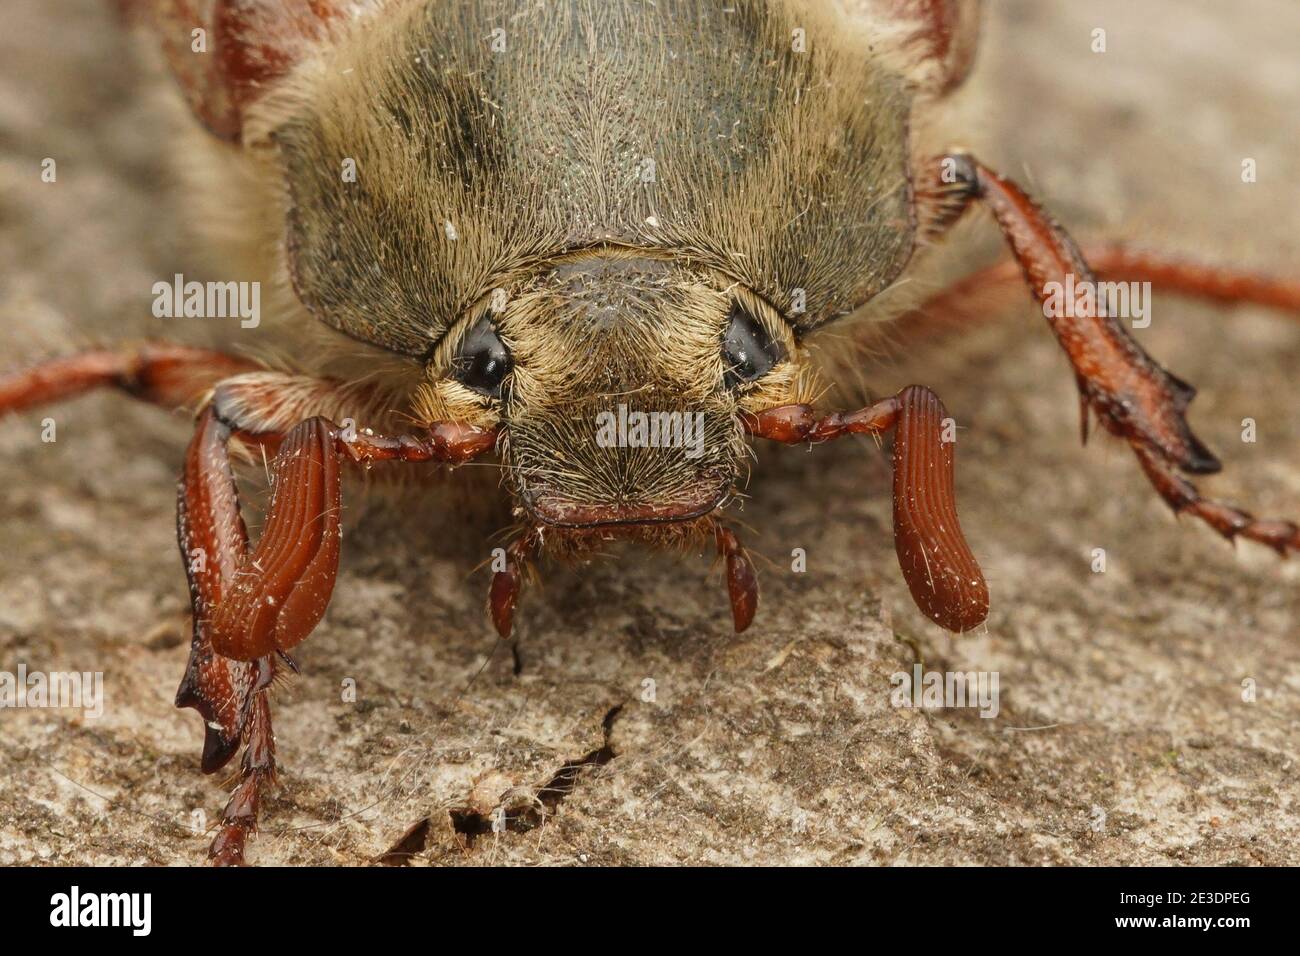 Nahaufnahme des Kopfes eines Kakadus, Maybug oder Doodlebug, Melolontha melolontha Stockfoto